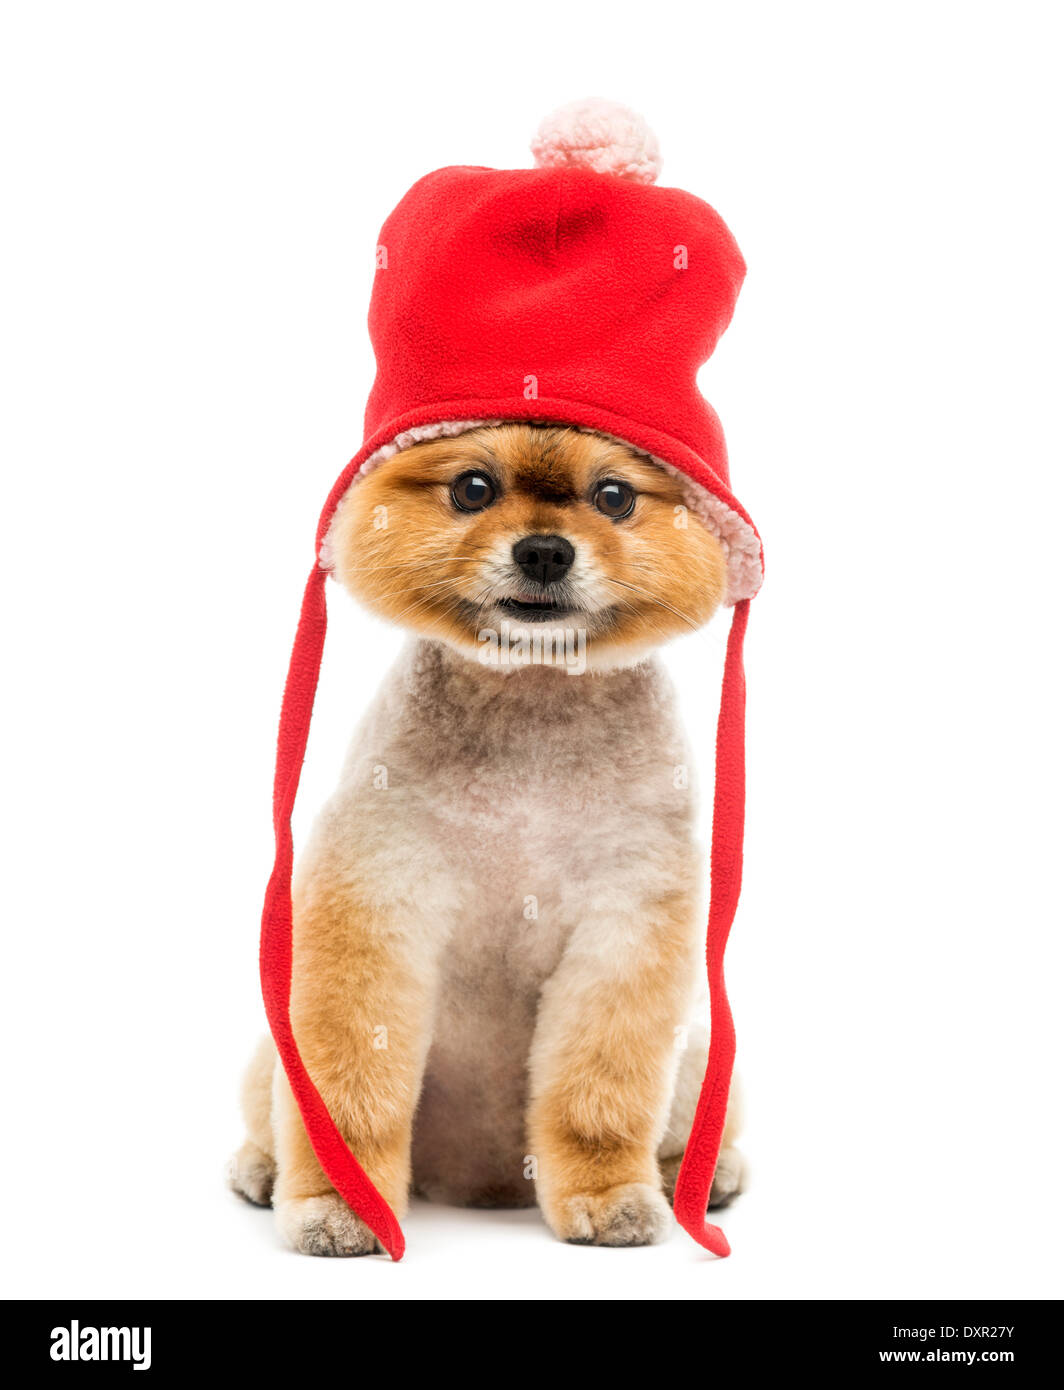 Battute di Pomerania dog sitter e indossando un cofano rosso contro lo sfondo bianco Foto Stock